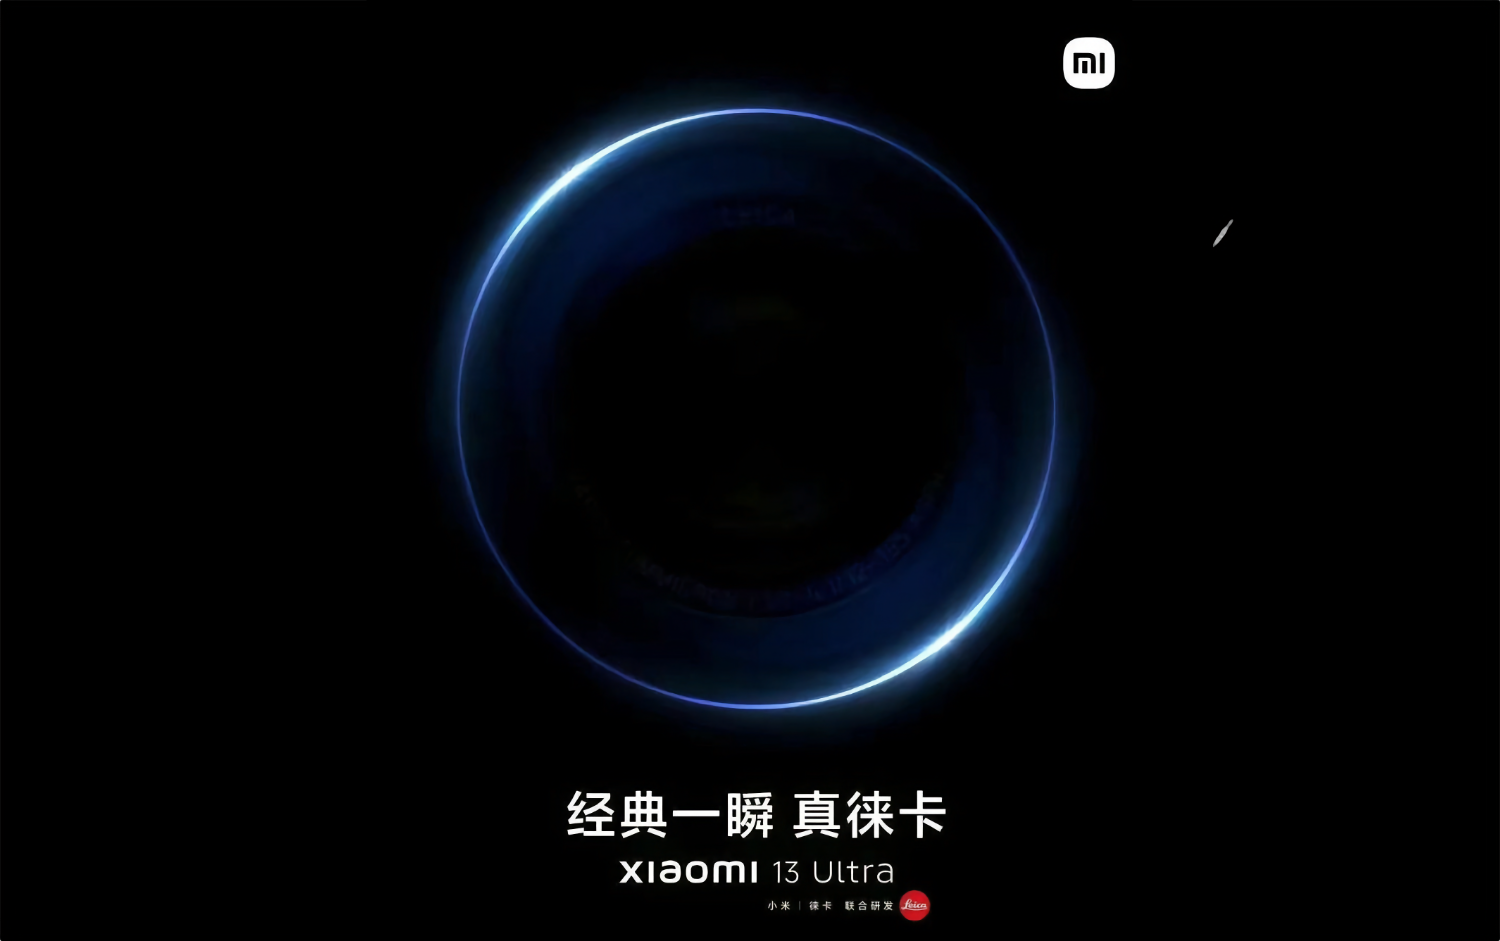 В Сеть слили приглашение на презентацию мощнейшего флагмана Xiaomi 13 Ultra